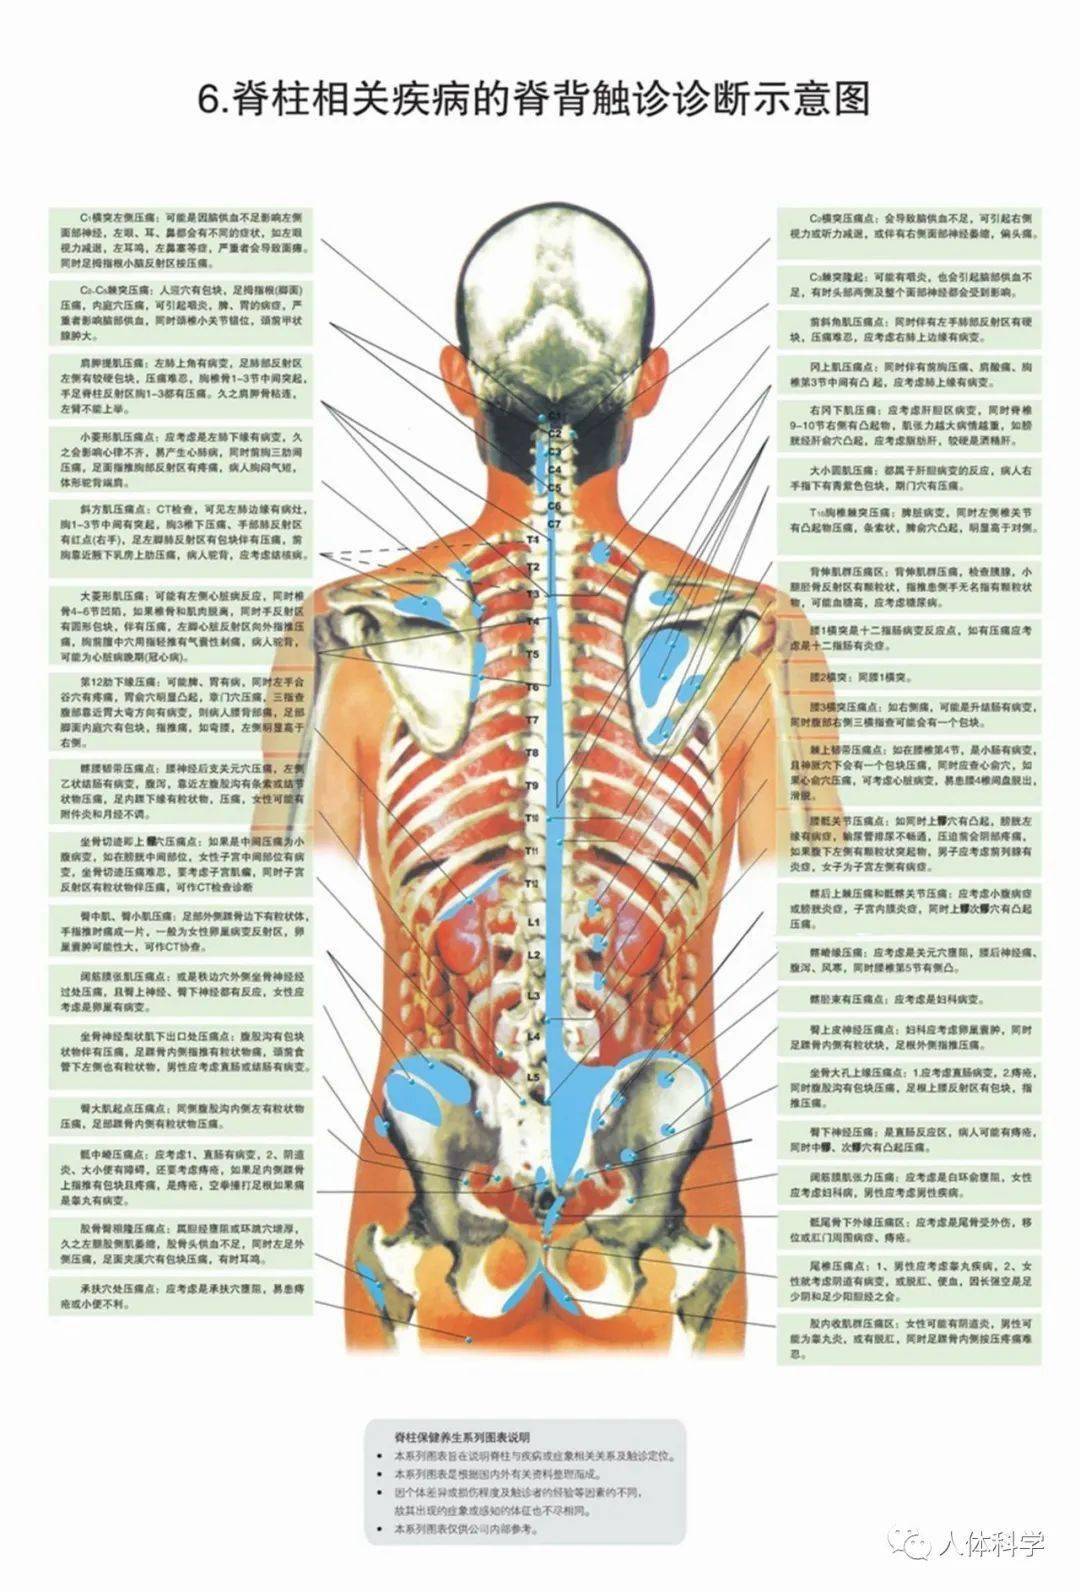 【雷霆解剖系列】脊髓解剖 - 脑医汇 - 神外资讯 - 神介资讯